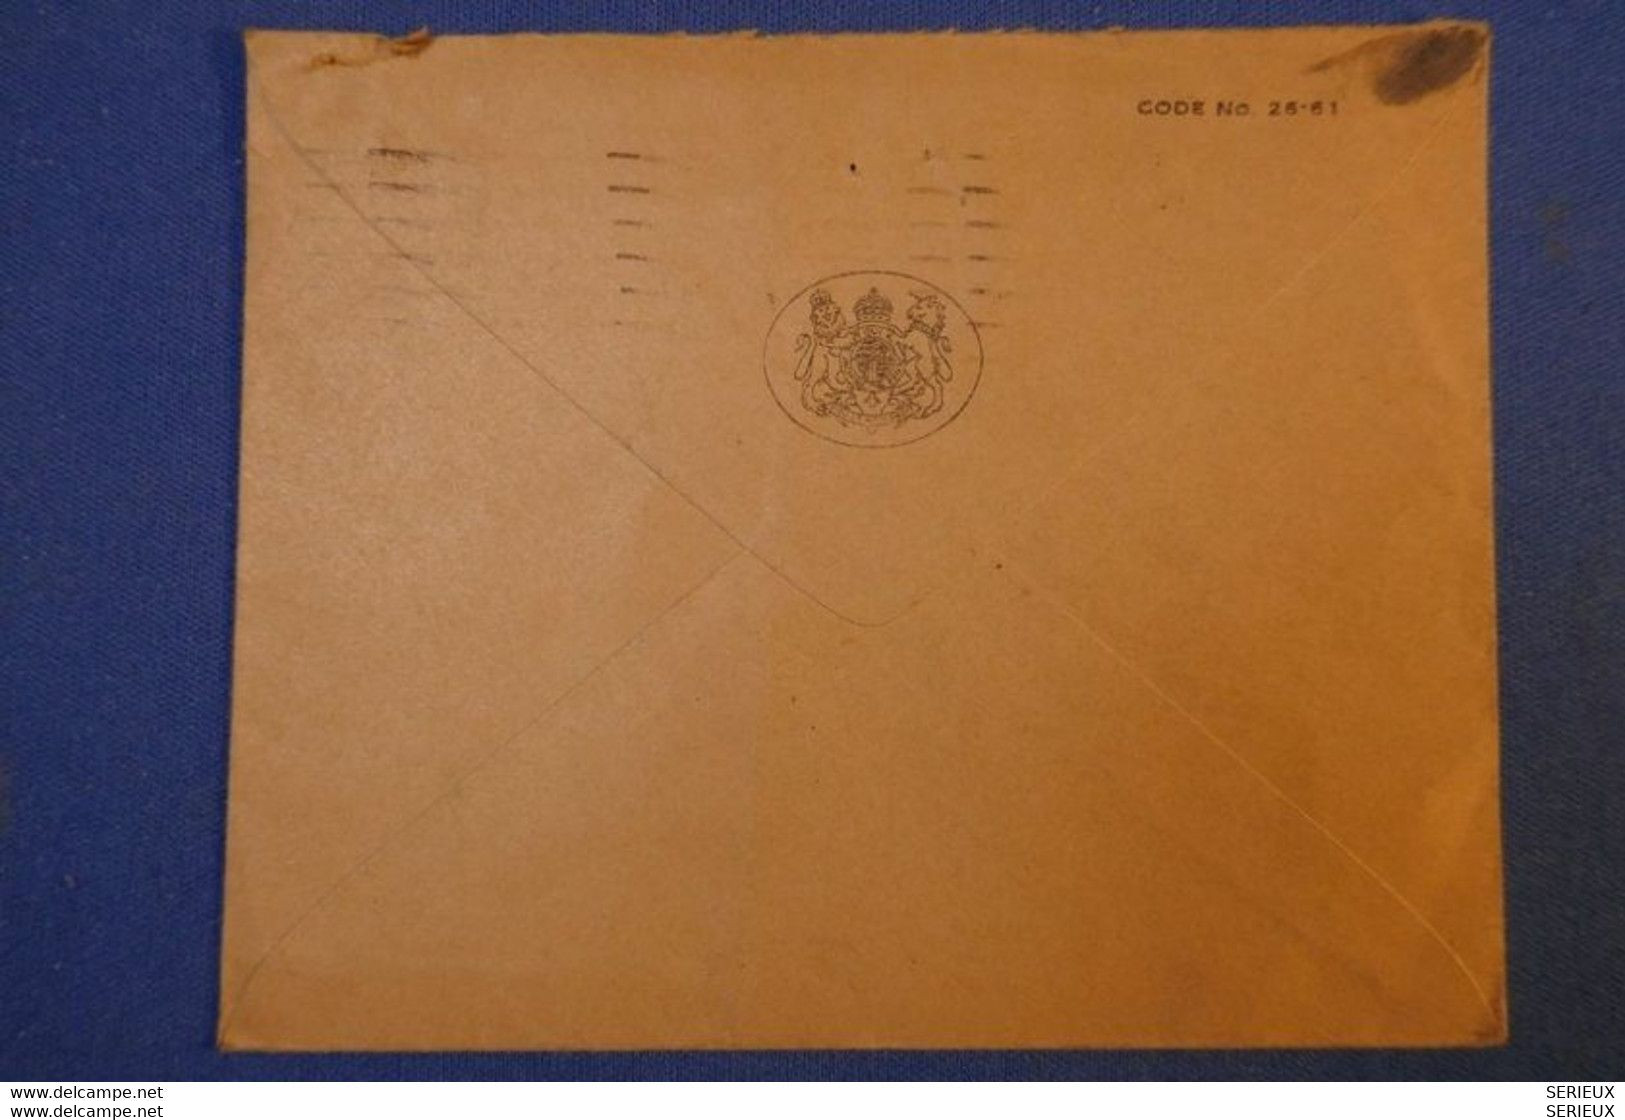 239 GRANDE BRETAGNE LETTRE 1951 DE LONDRES A PARIS R DE LA CONVENTION + TIMBRES PERFORATIONS PERFORATED - Covers & Documents